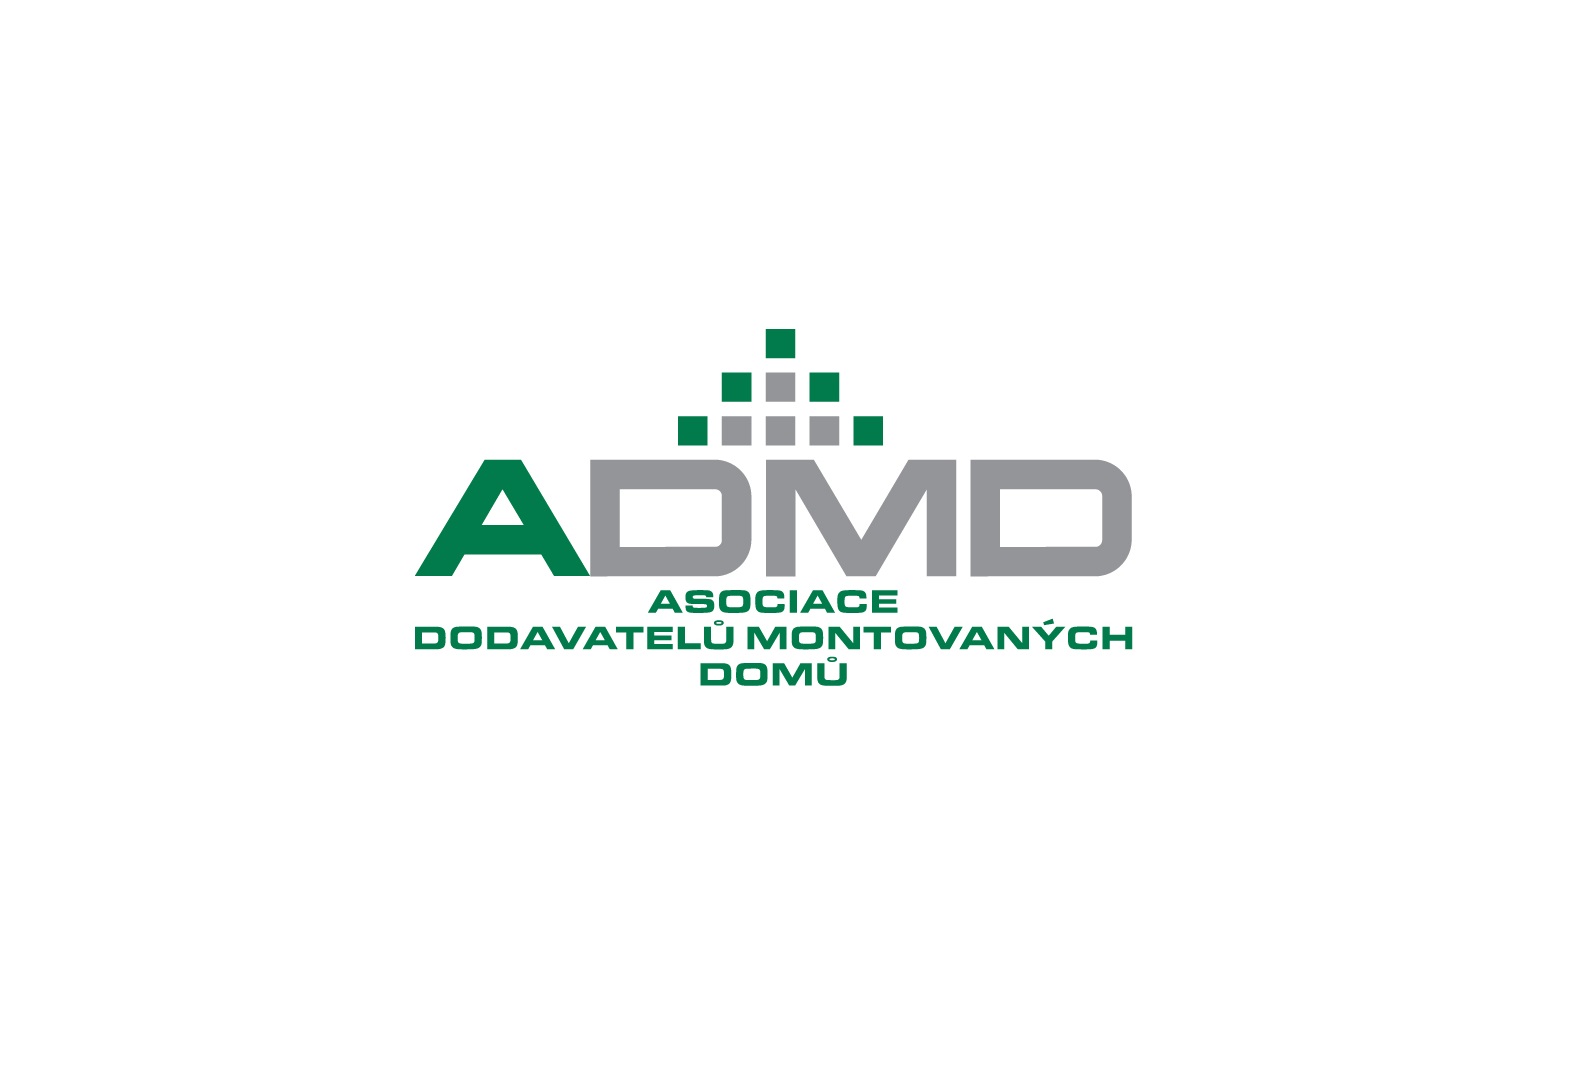  ADMD se rozhodla pomáhat s větší energií než doposud.